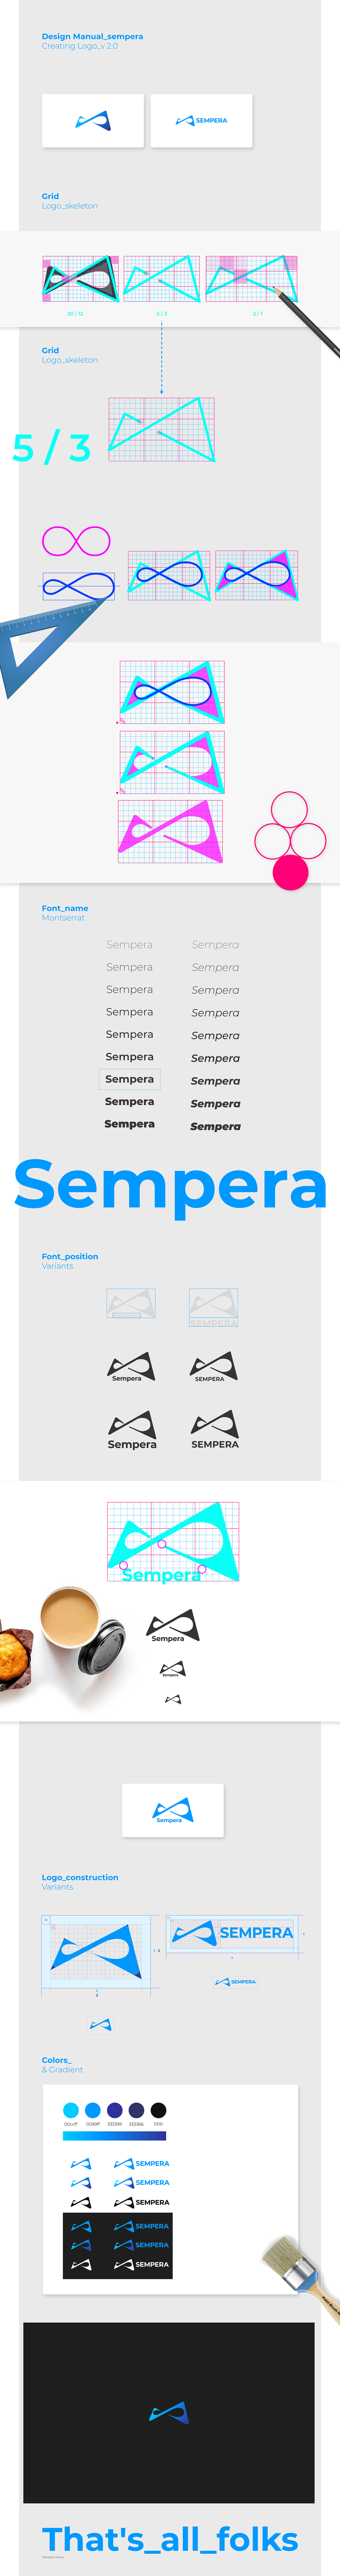 sempera design designguide brand brandguide logoguide people company logo